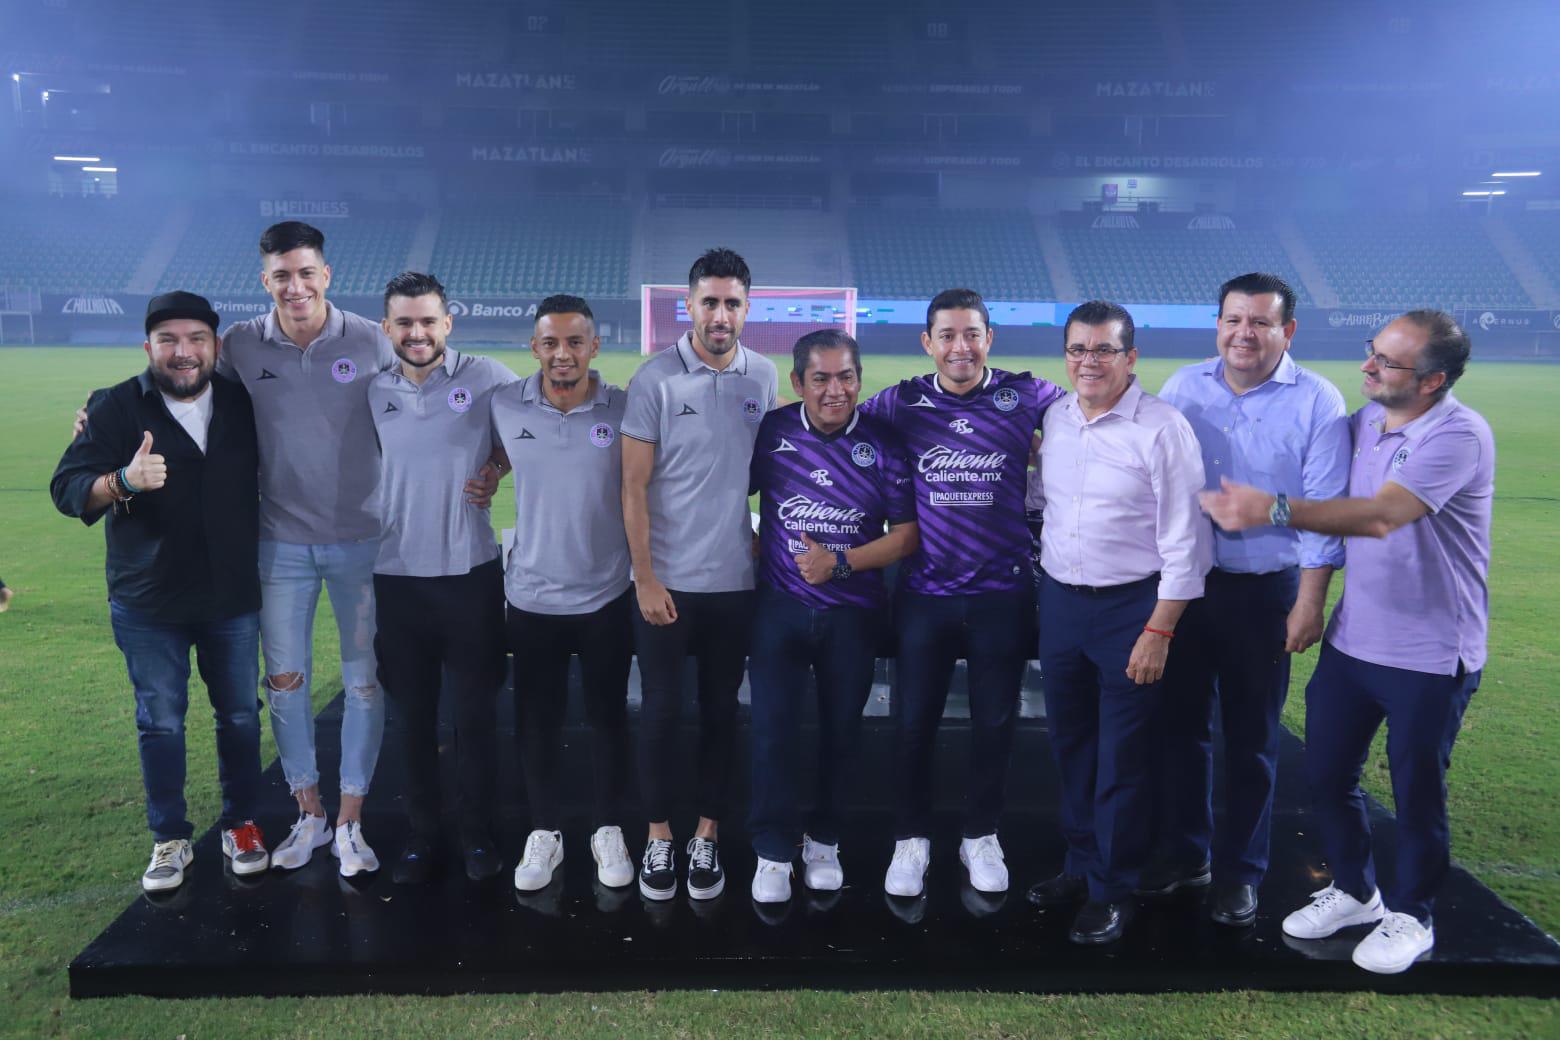 $!El estadio de Mazatlán FC deja de llamarse Kraken para convertirse en El Encanto